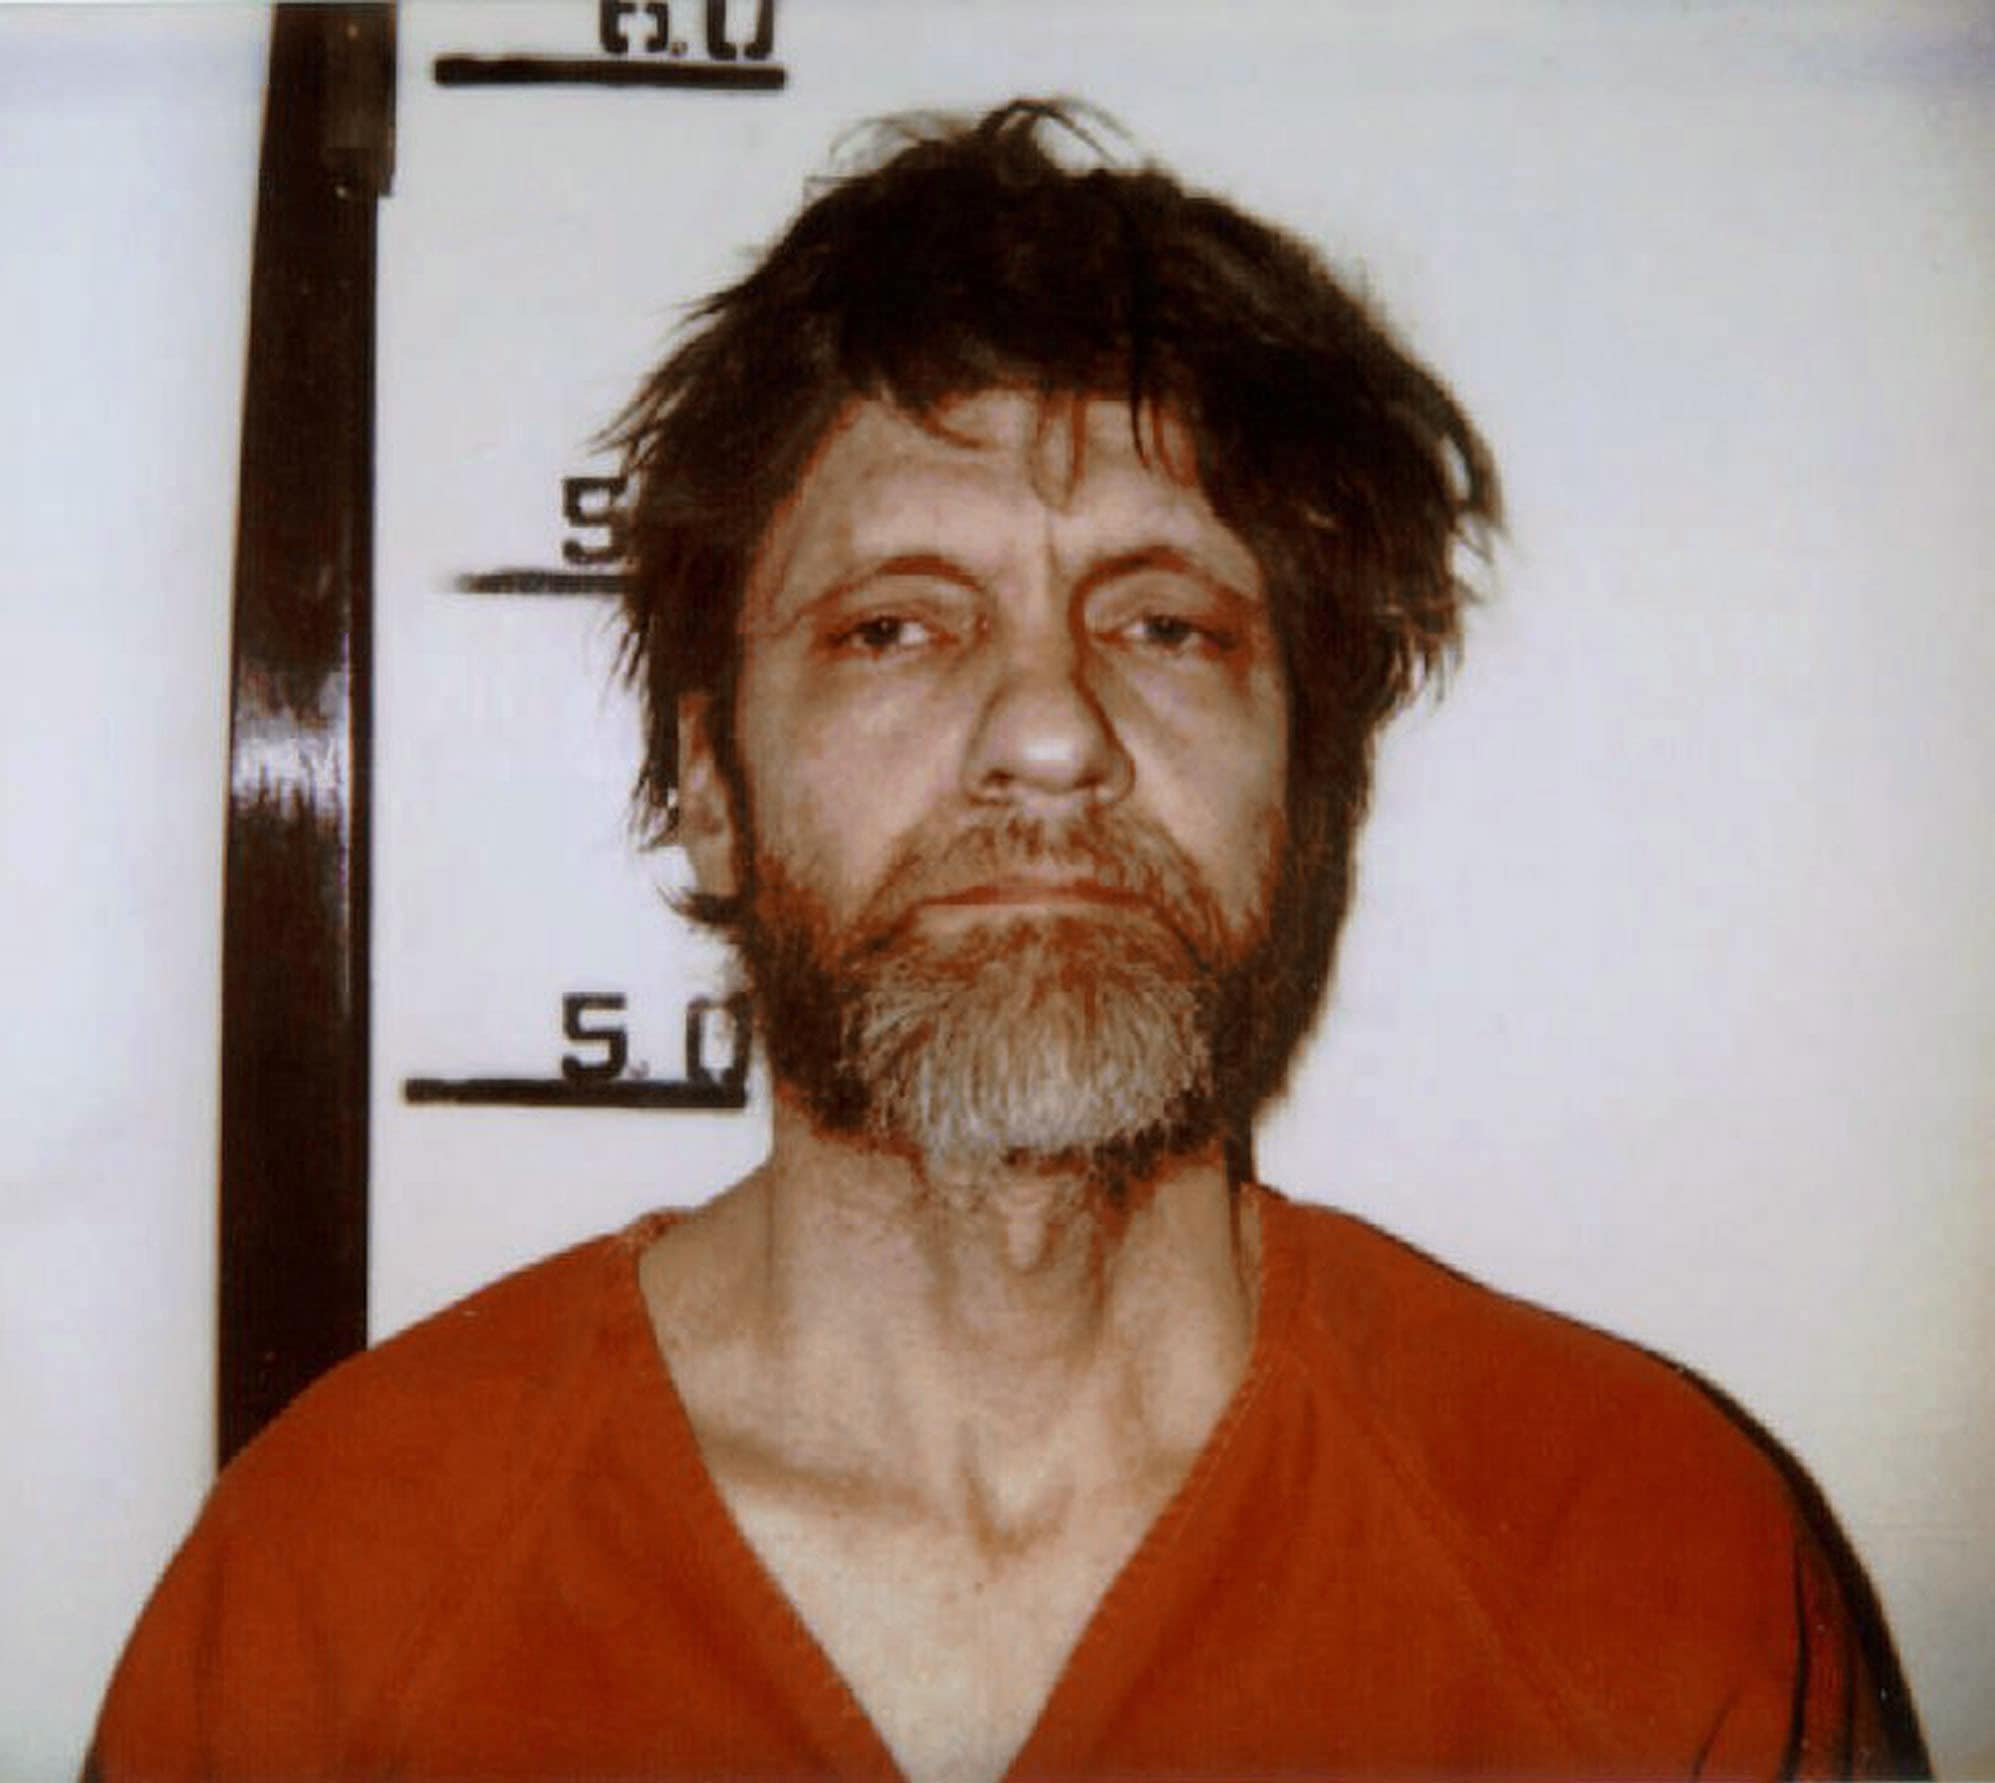 Muere en prisión el terrorista Theodore Kaczynski, conocido como ‘Unabomber’